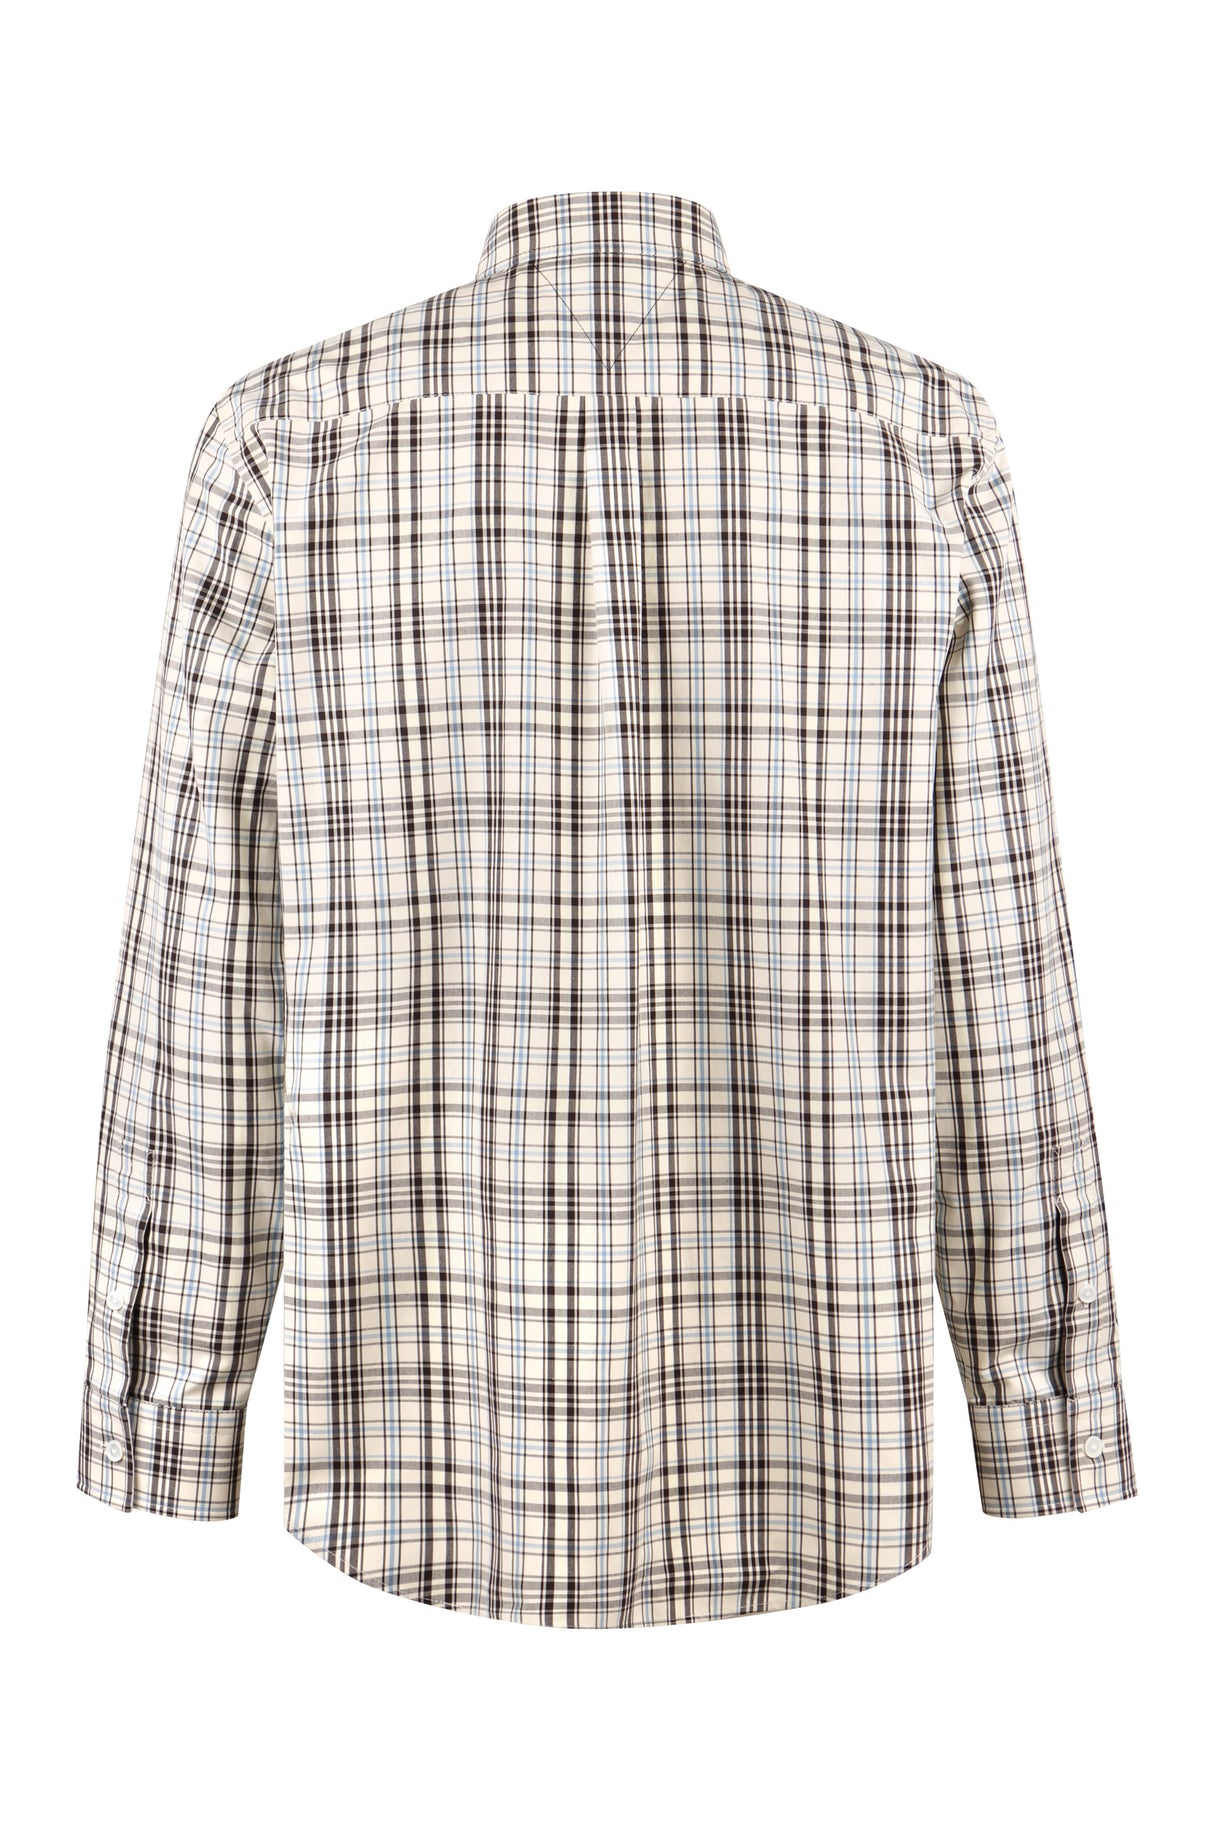 BOTTEGA VENETA Checkered Design Cotton Shirt for Men